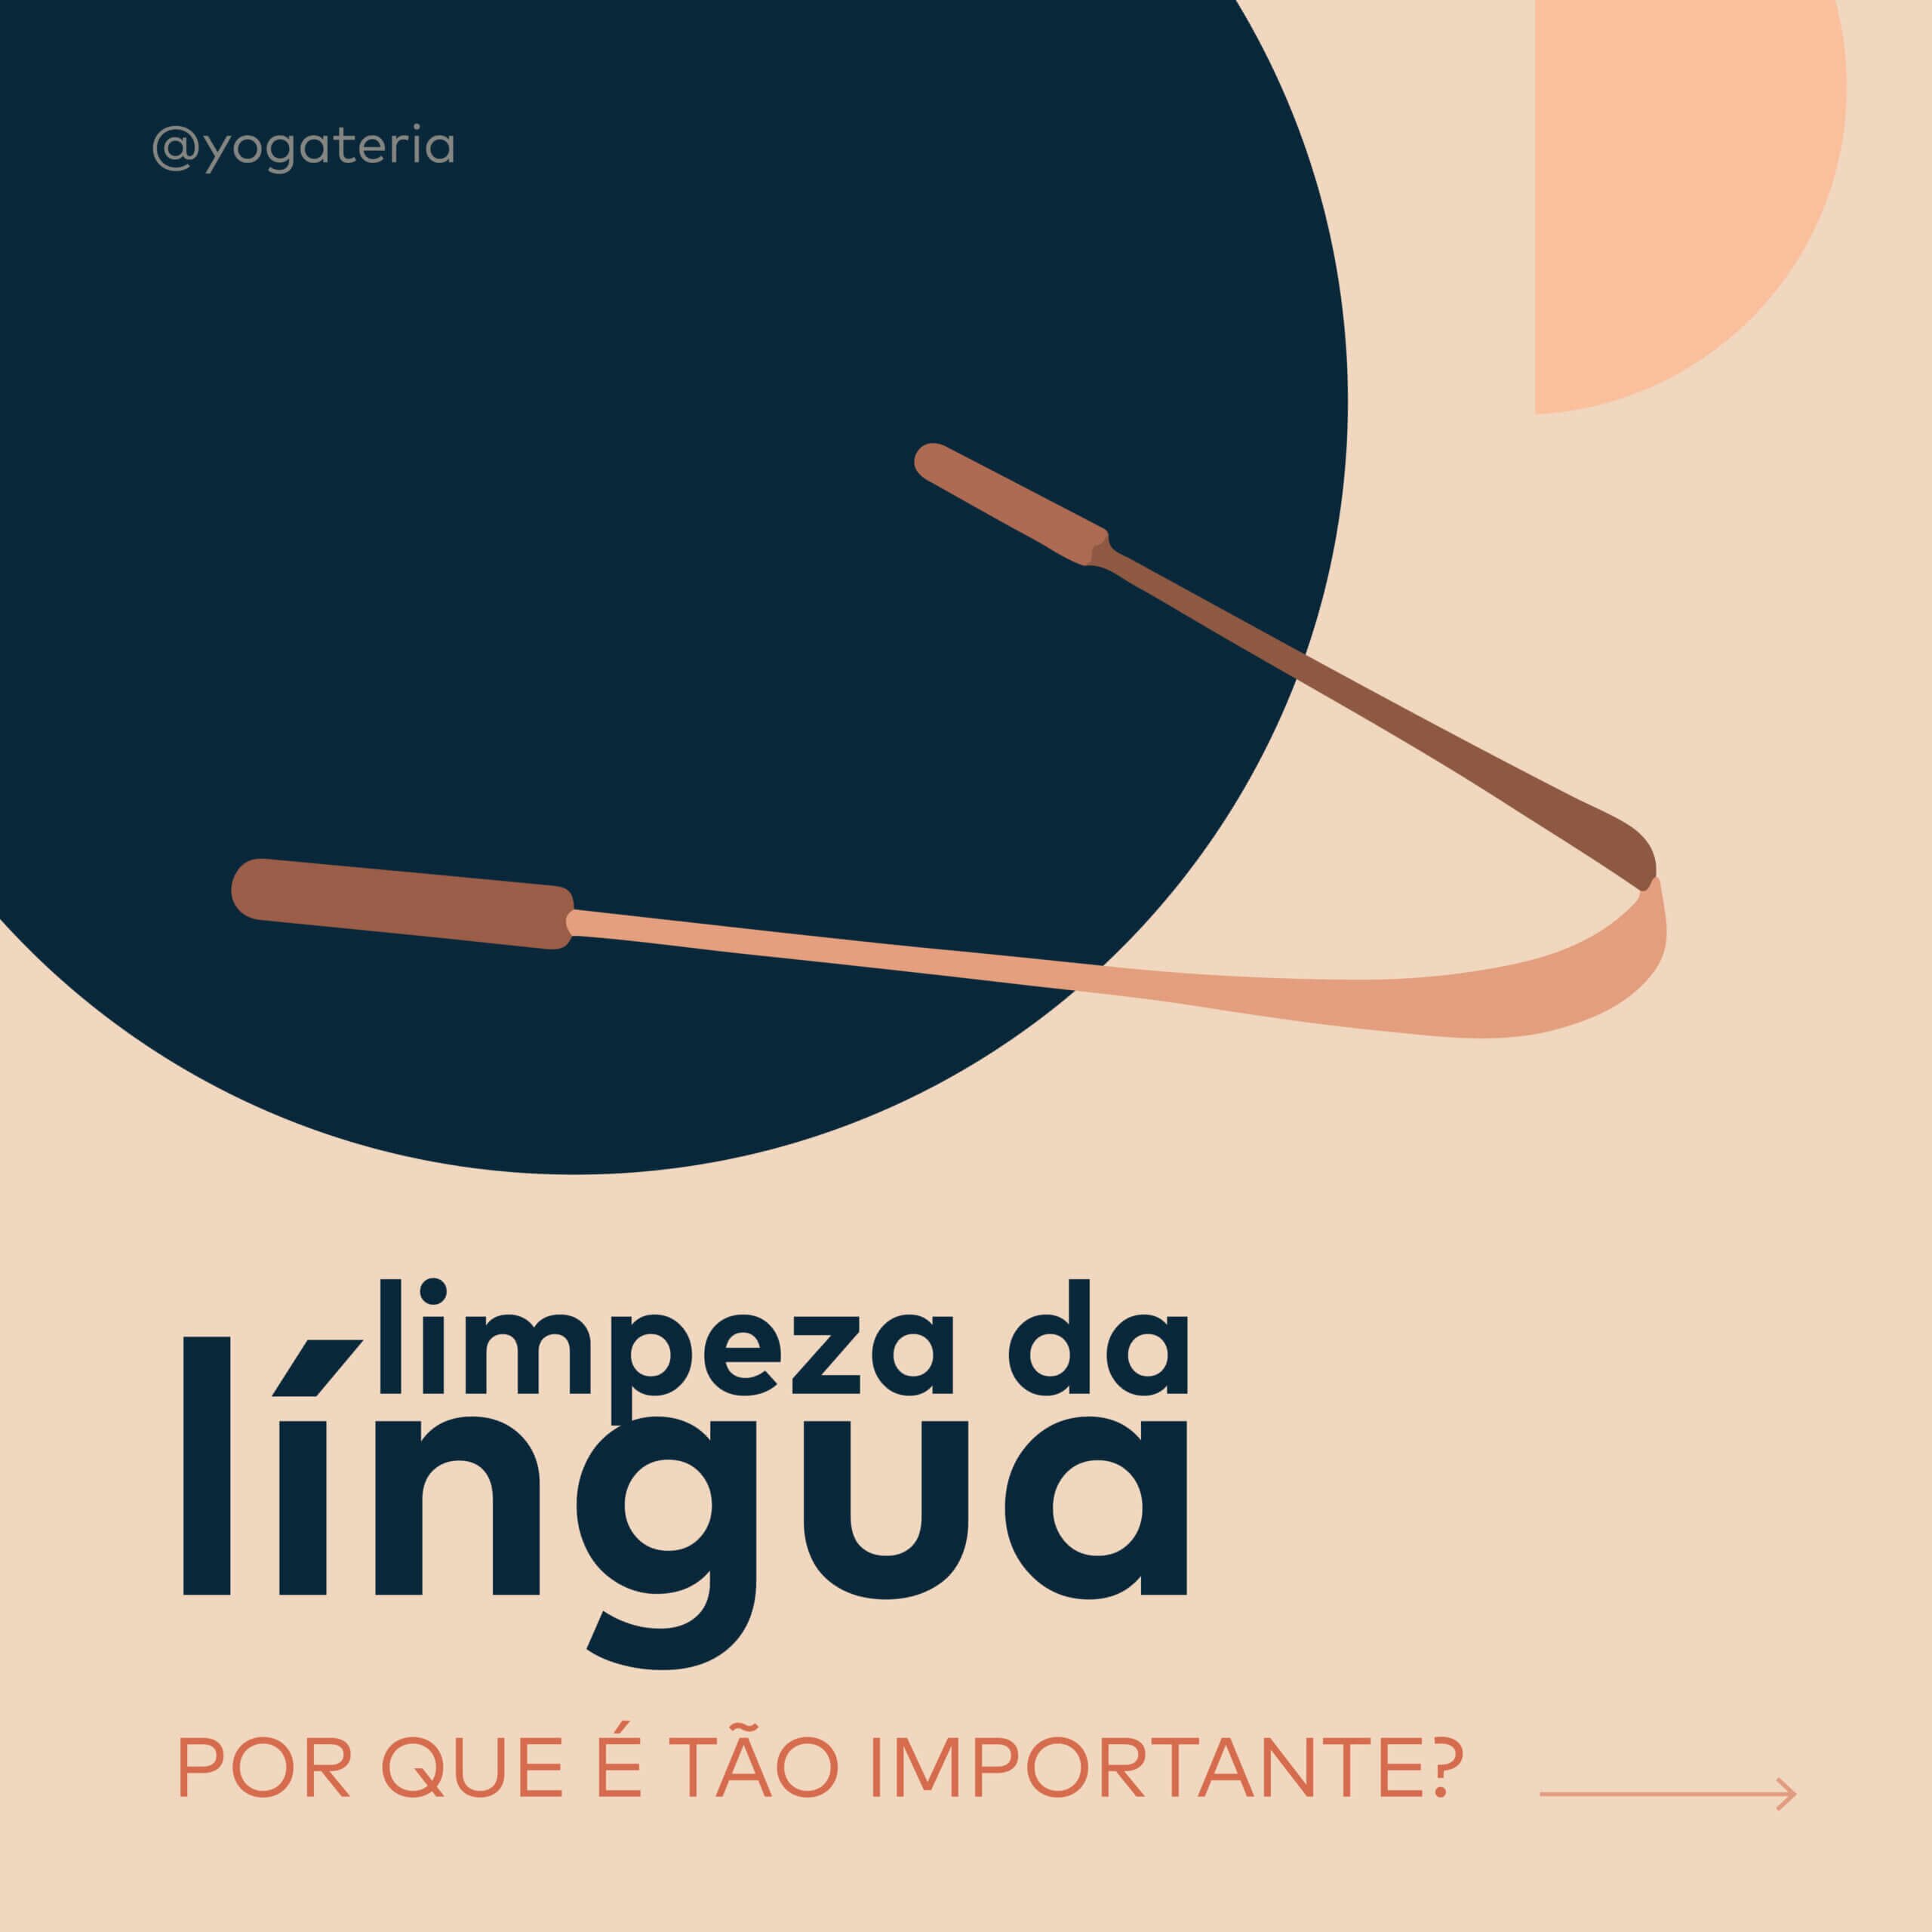 limpador-lingua-yogateria-1